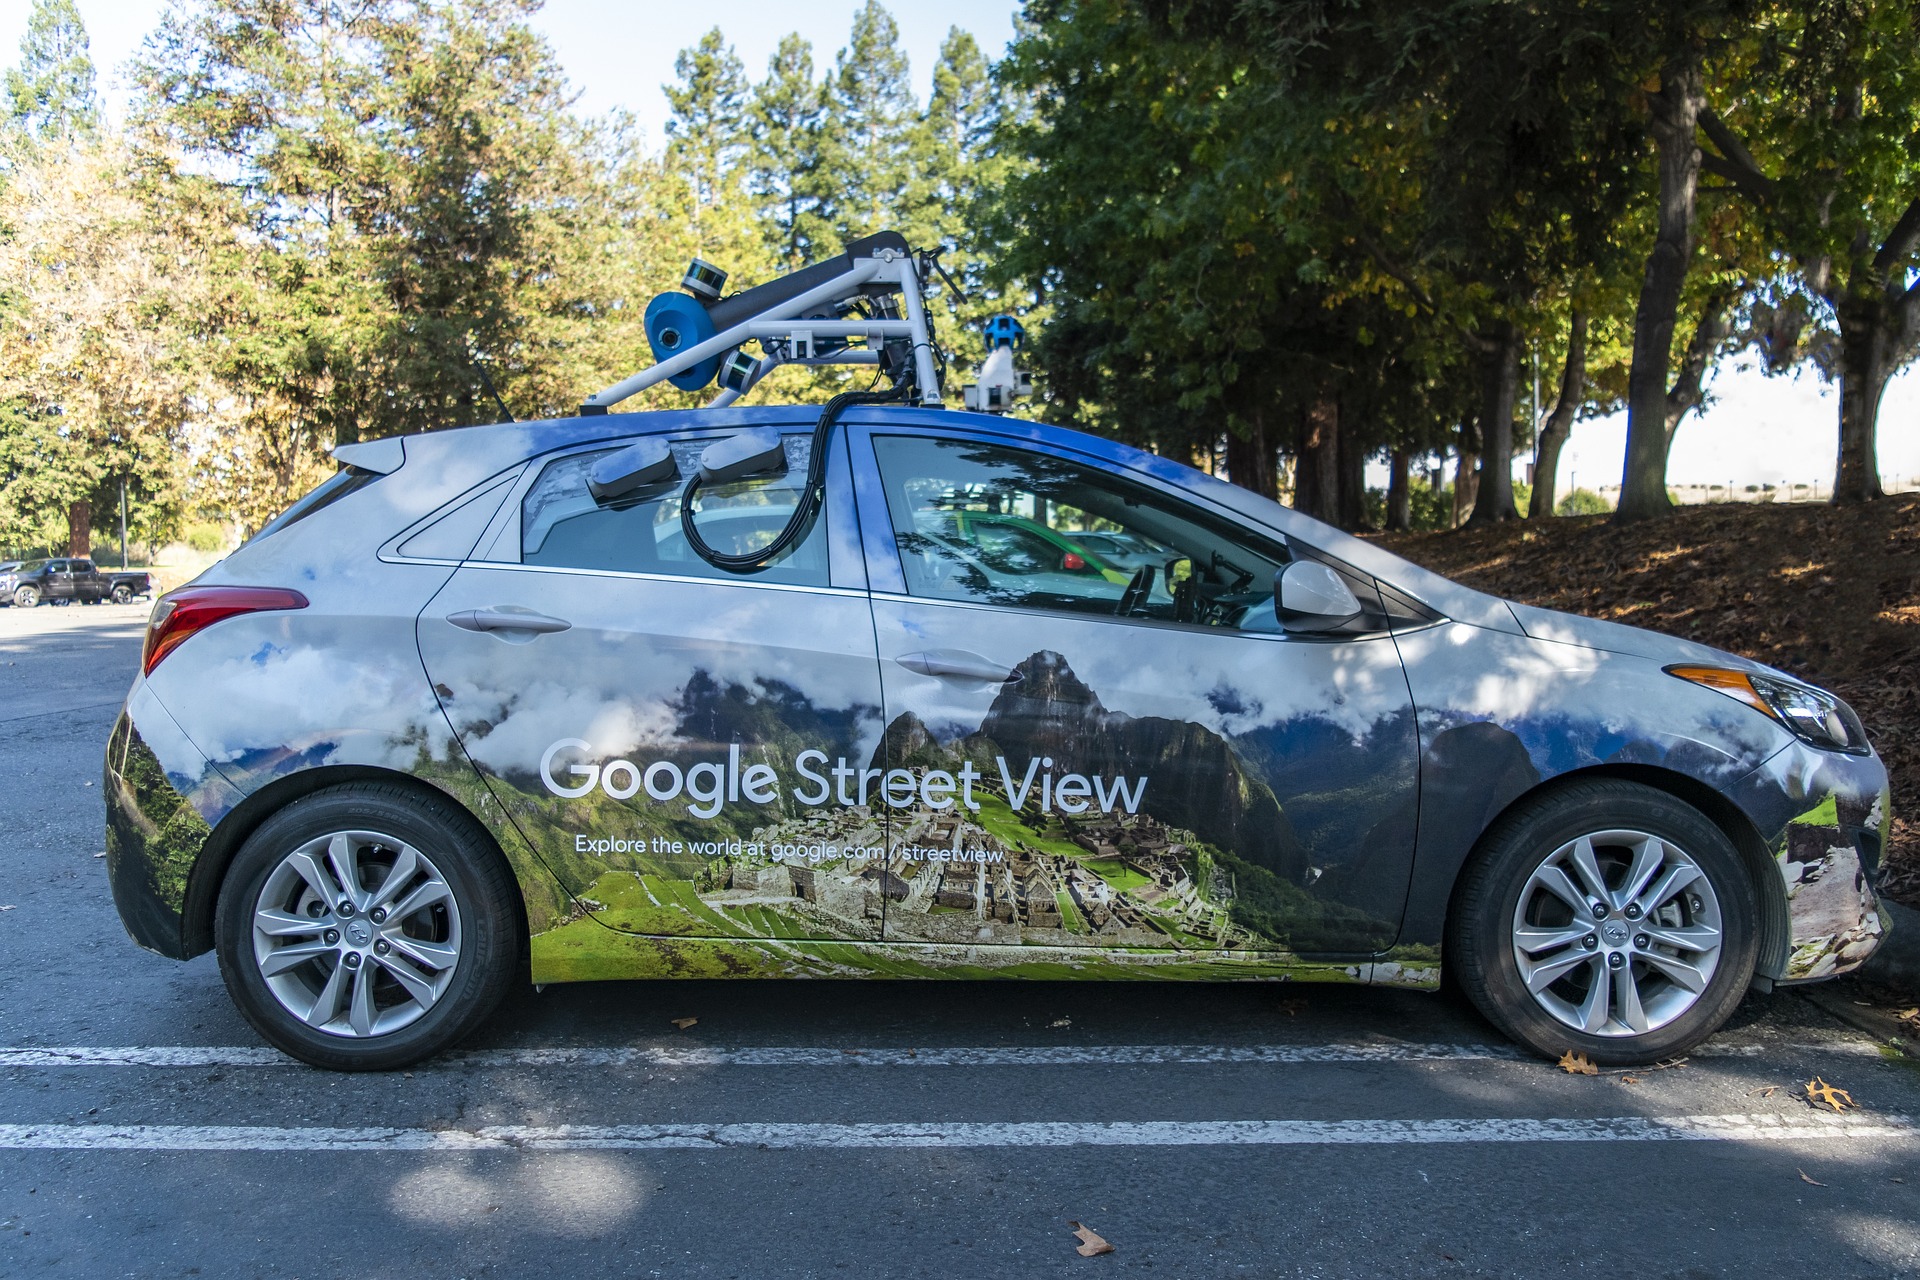 Google Street View autod asuvad taas Eestit üles pildistama  